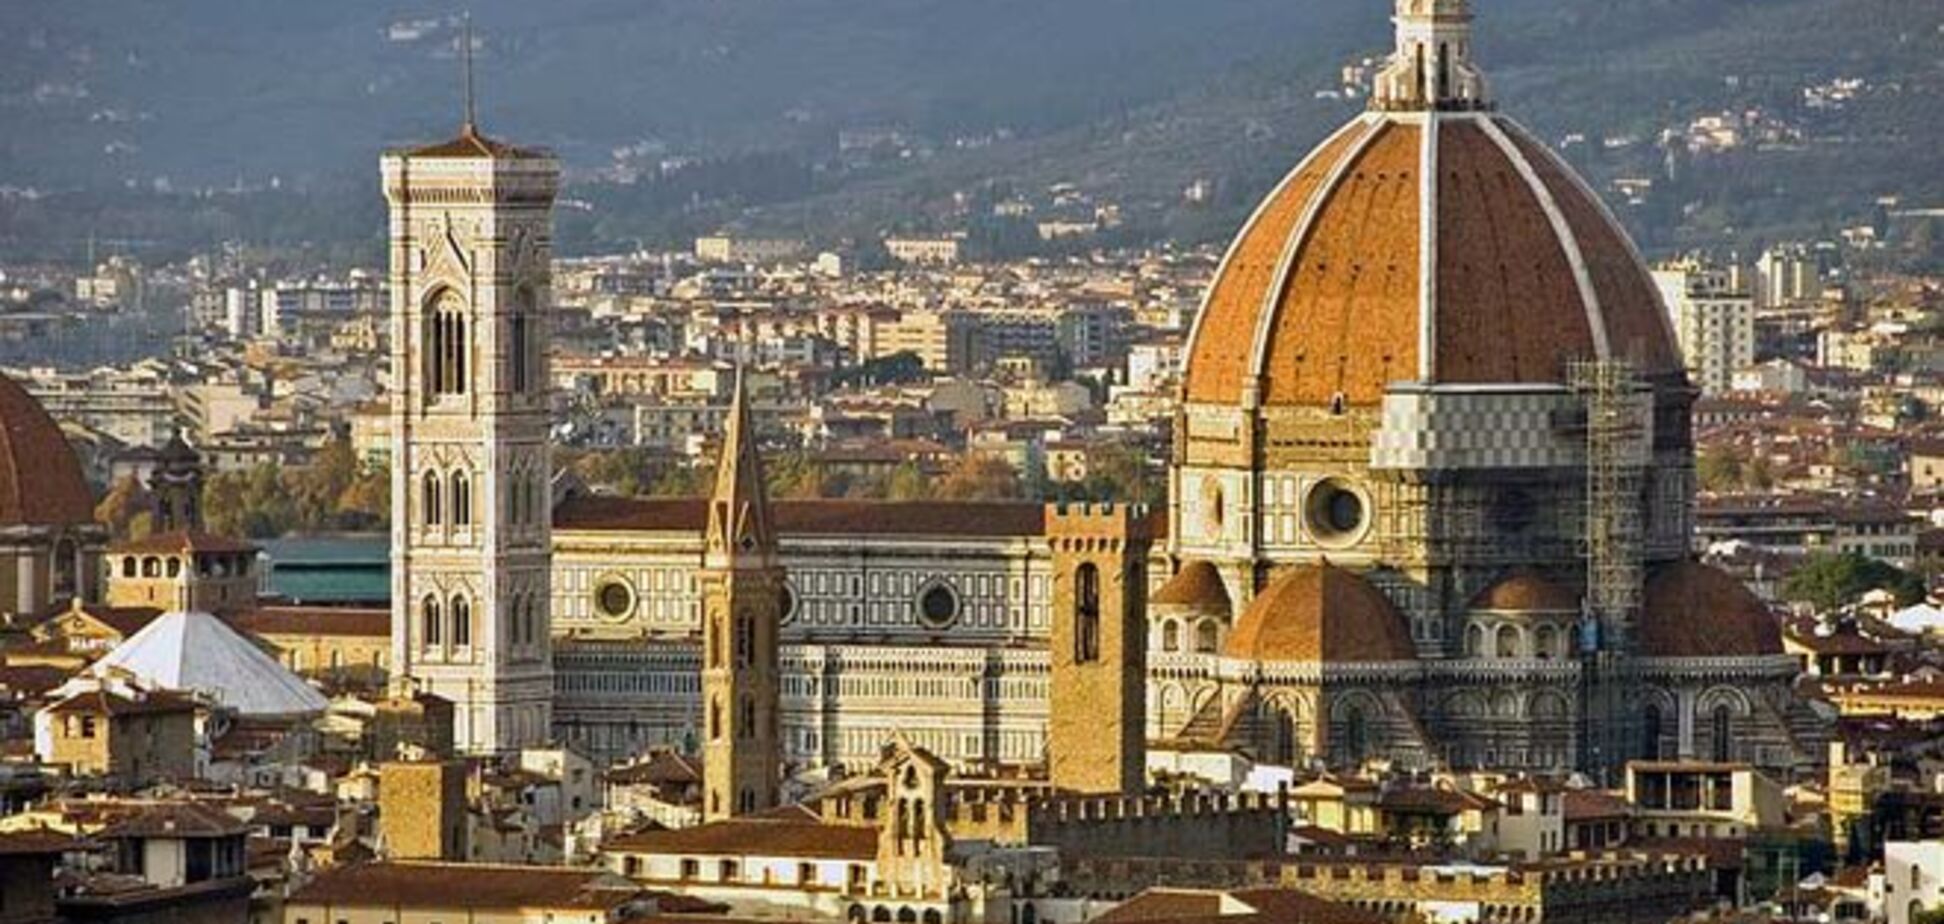 Как удаленно работать и жить в Италии за 500 евро в месяц: опыт 45-дневной поездки